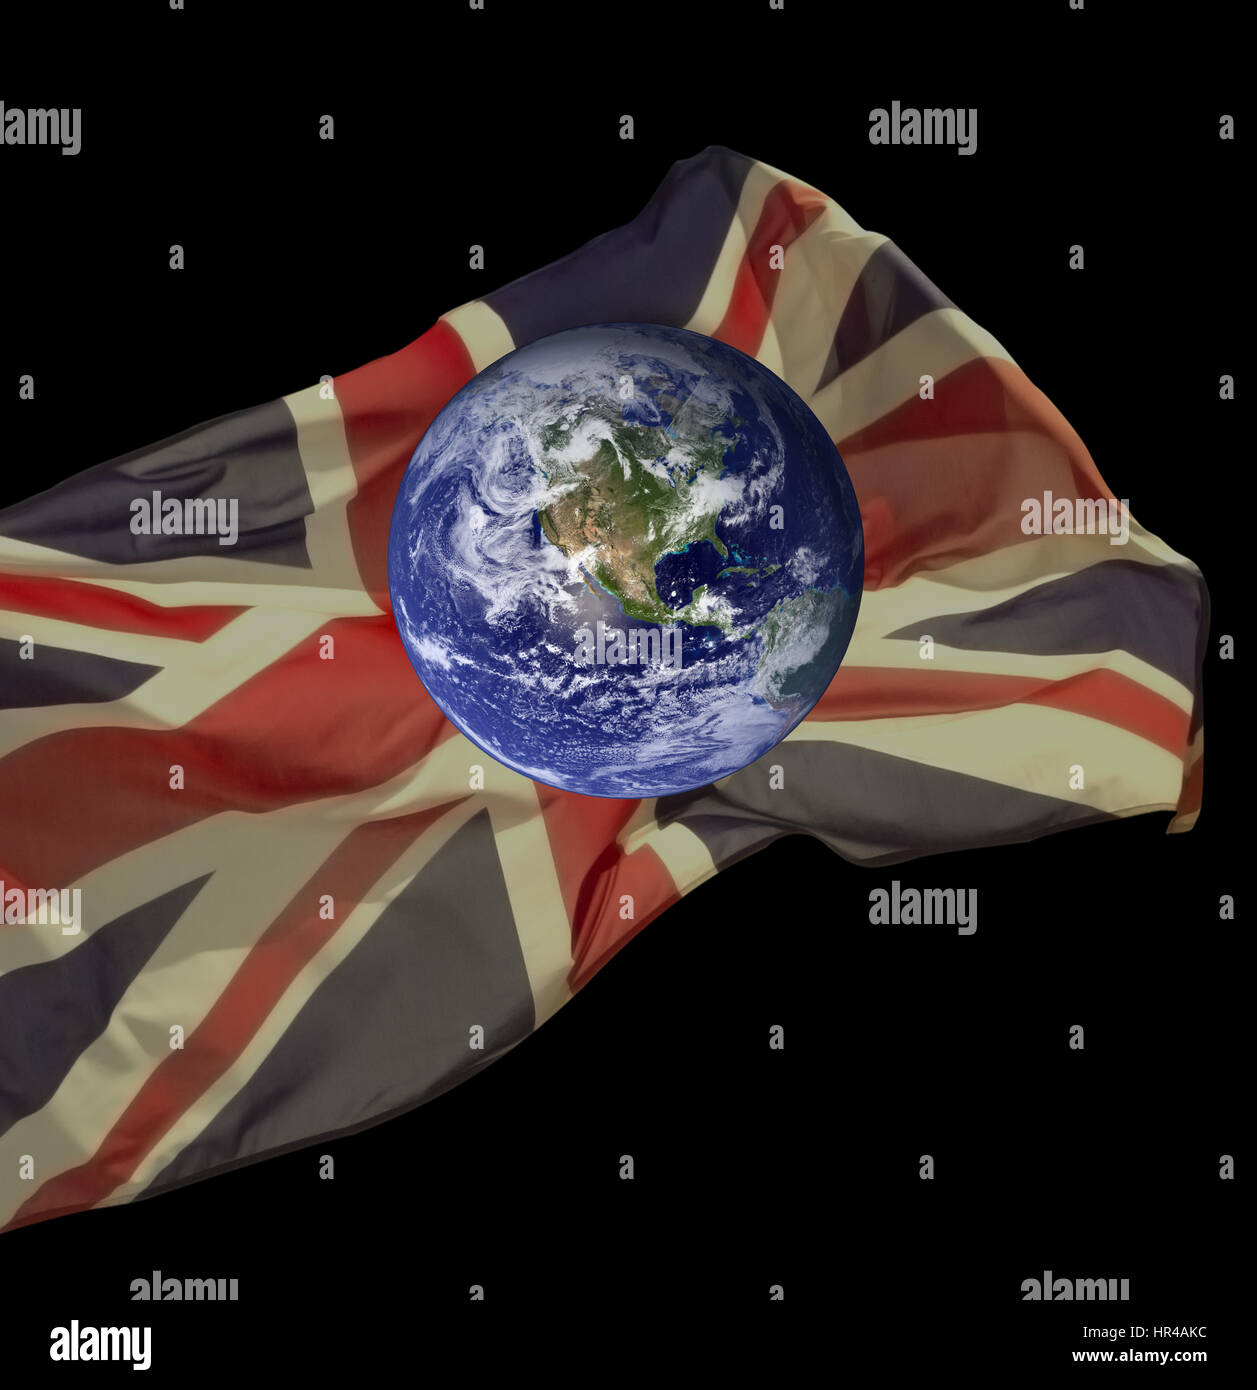 Konzeptionelle Darstellung der Erde umgeben von britische Flagge, Union Jack, was bedeutet Potenzial für einen Beitrag Brexit Welt. Stockfoto